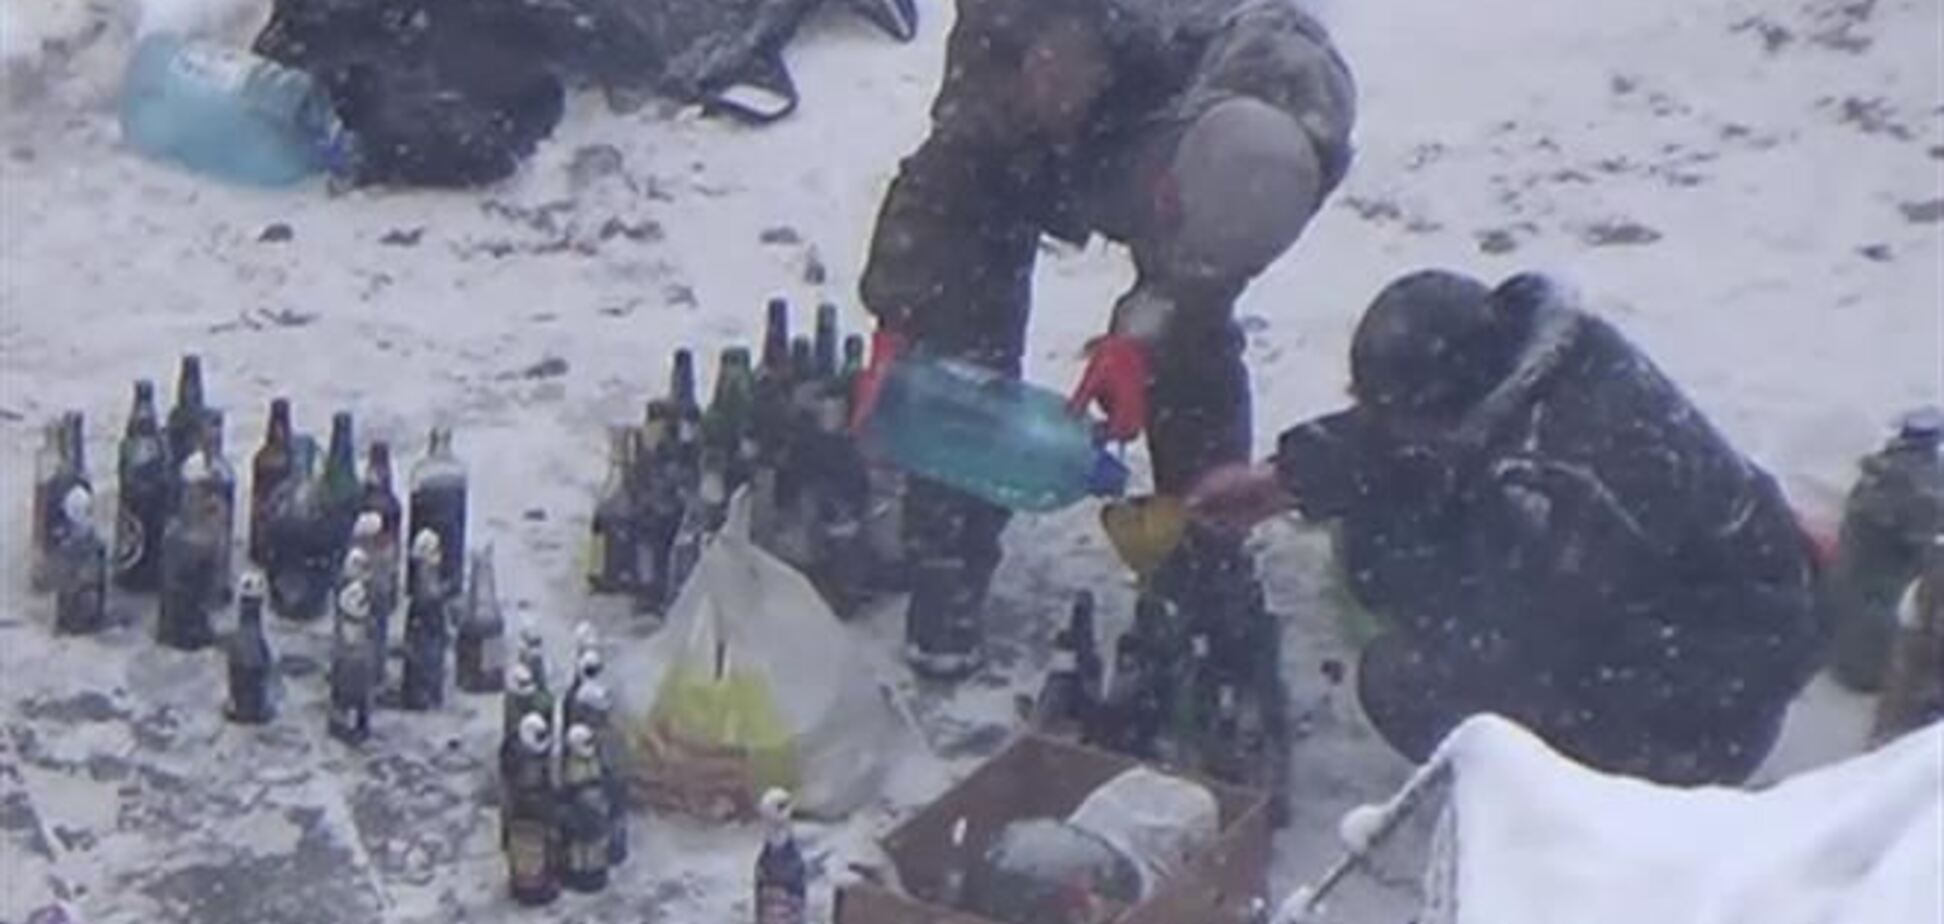 В палаточном городке Евромайдана готовят 'коктейли Молотова' - МВД